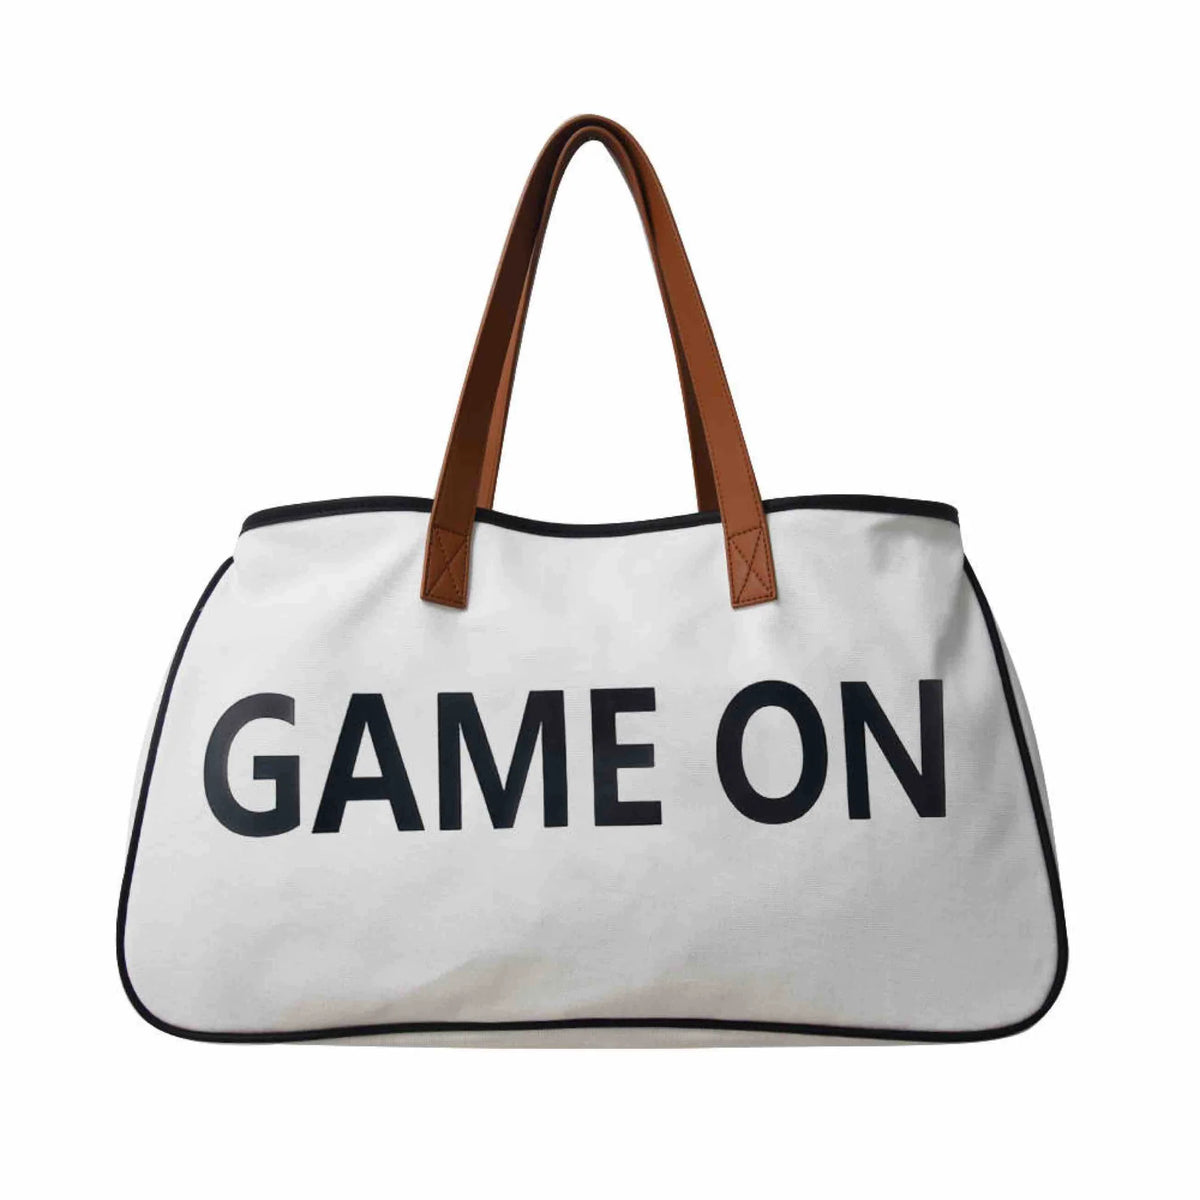 Weekend Getaway Tote Bag - Game On